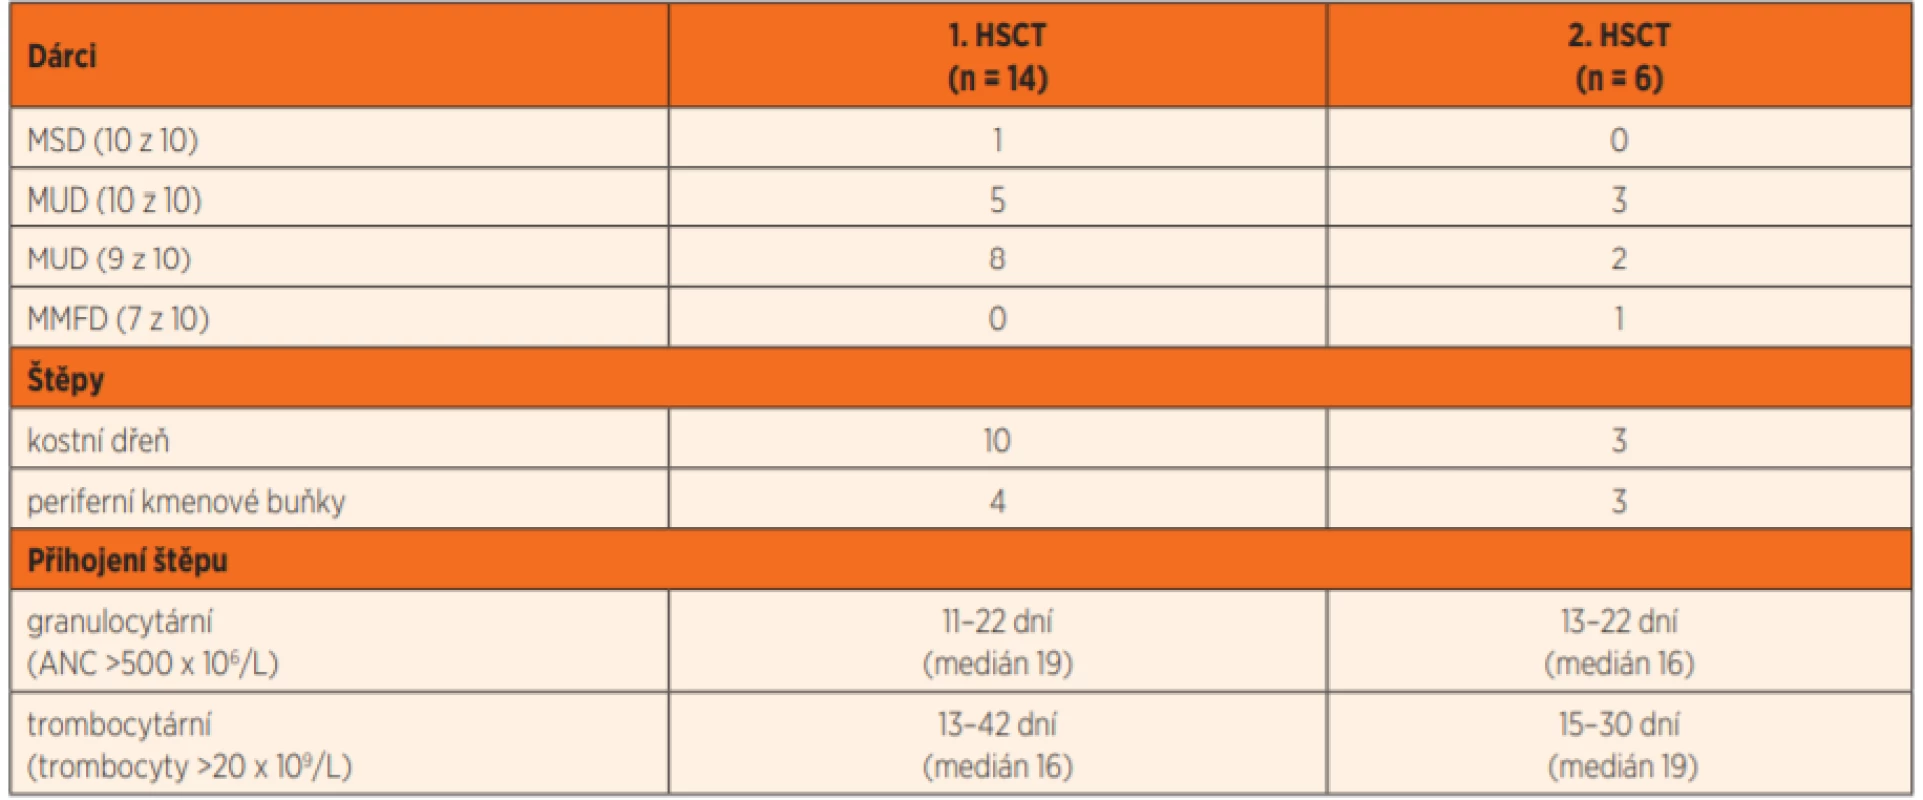 Charakteristika dárců, štěpů a přihojení pro první a druhou HSCT.